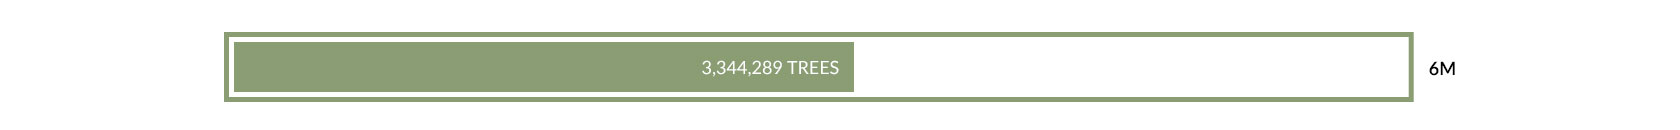 3,344,289 TREES